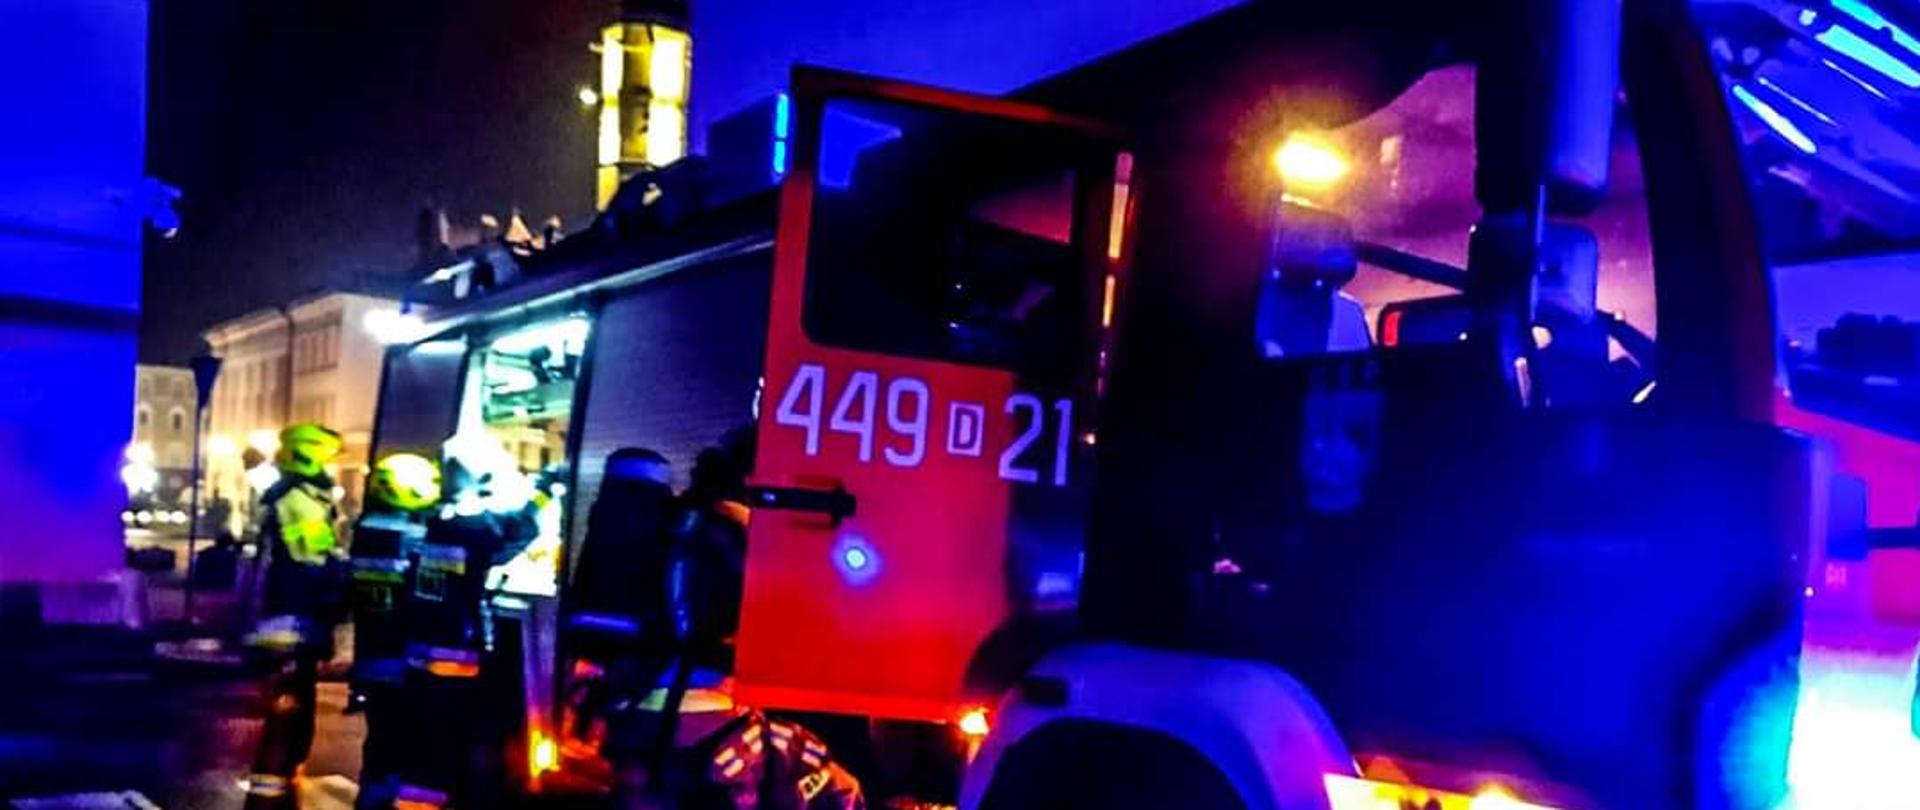 Obraz przedstawia samochód strażacki zaparkowany na ulicy. Pojazdy z włączonymi niebieskimi sygnałami alarmowymi. Przy pojeździe strażacy wyciągający sprzęt z bocznych skrytek. W tle widoczny jaworski rynek. Pora nocna.